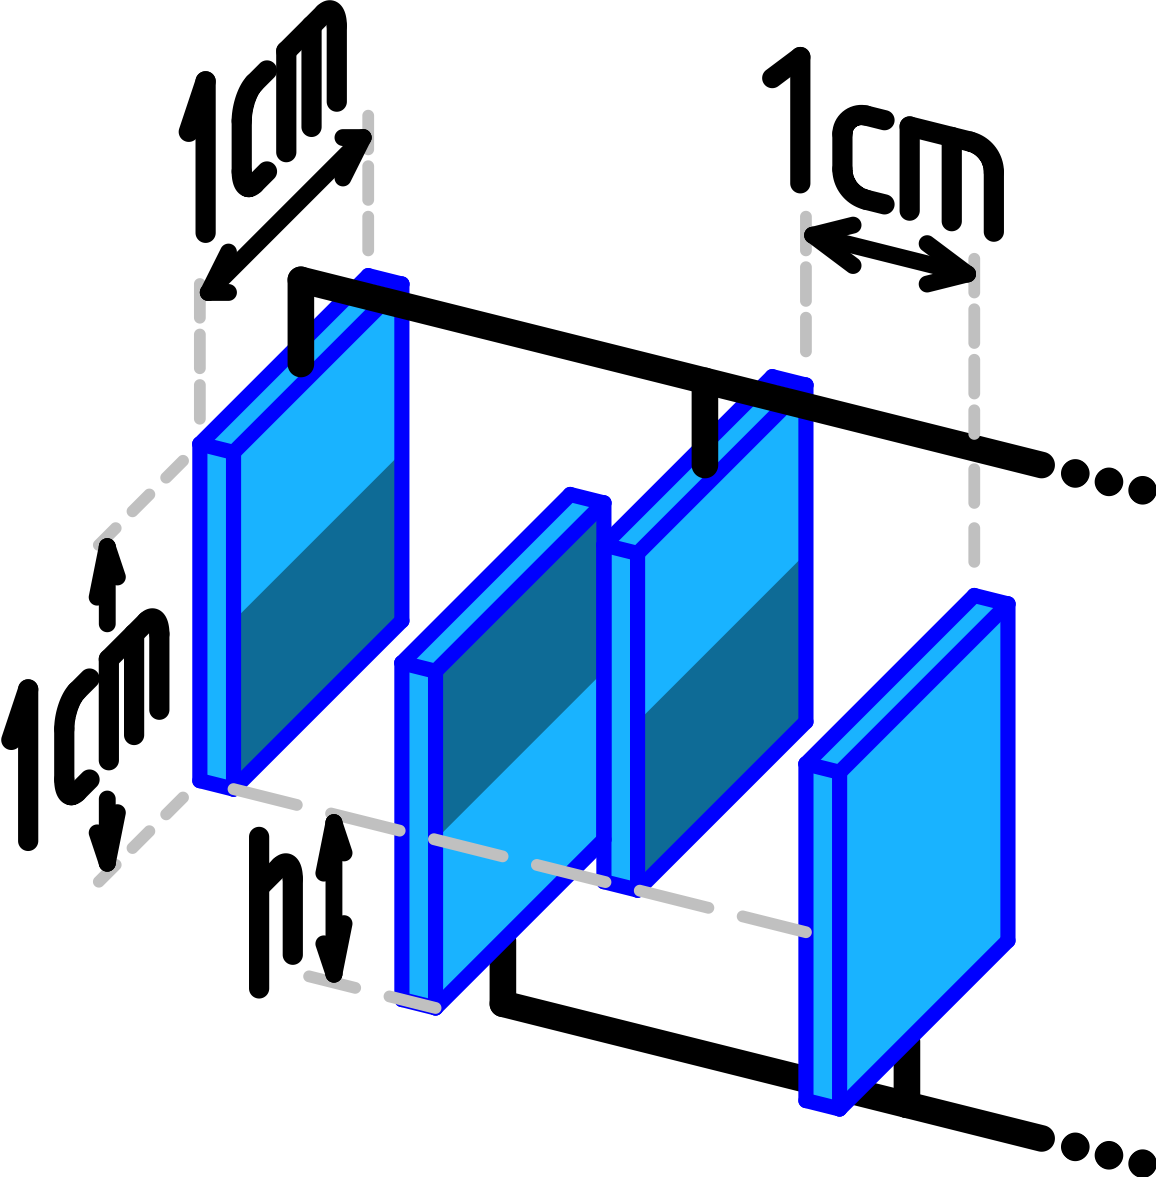 b) Die vier äquidistanten Plättchen im Bild stellen zusammen einen größeren Kondensator dar. Der Kondensator ist an eine Spannungsquelle mit Nennspannung Uo = 5,0 V angeschlossen.